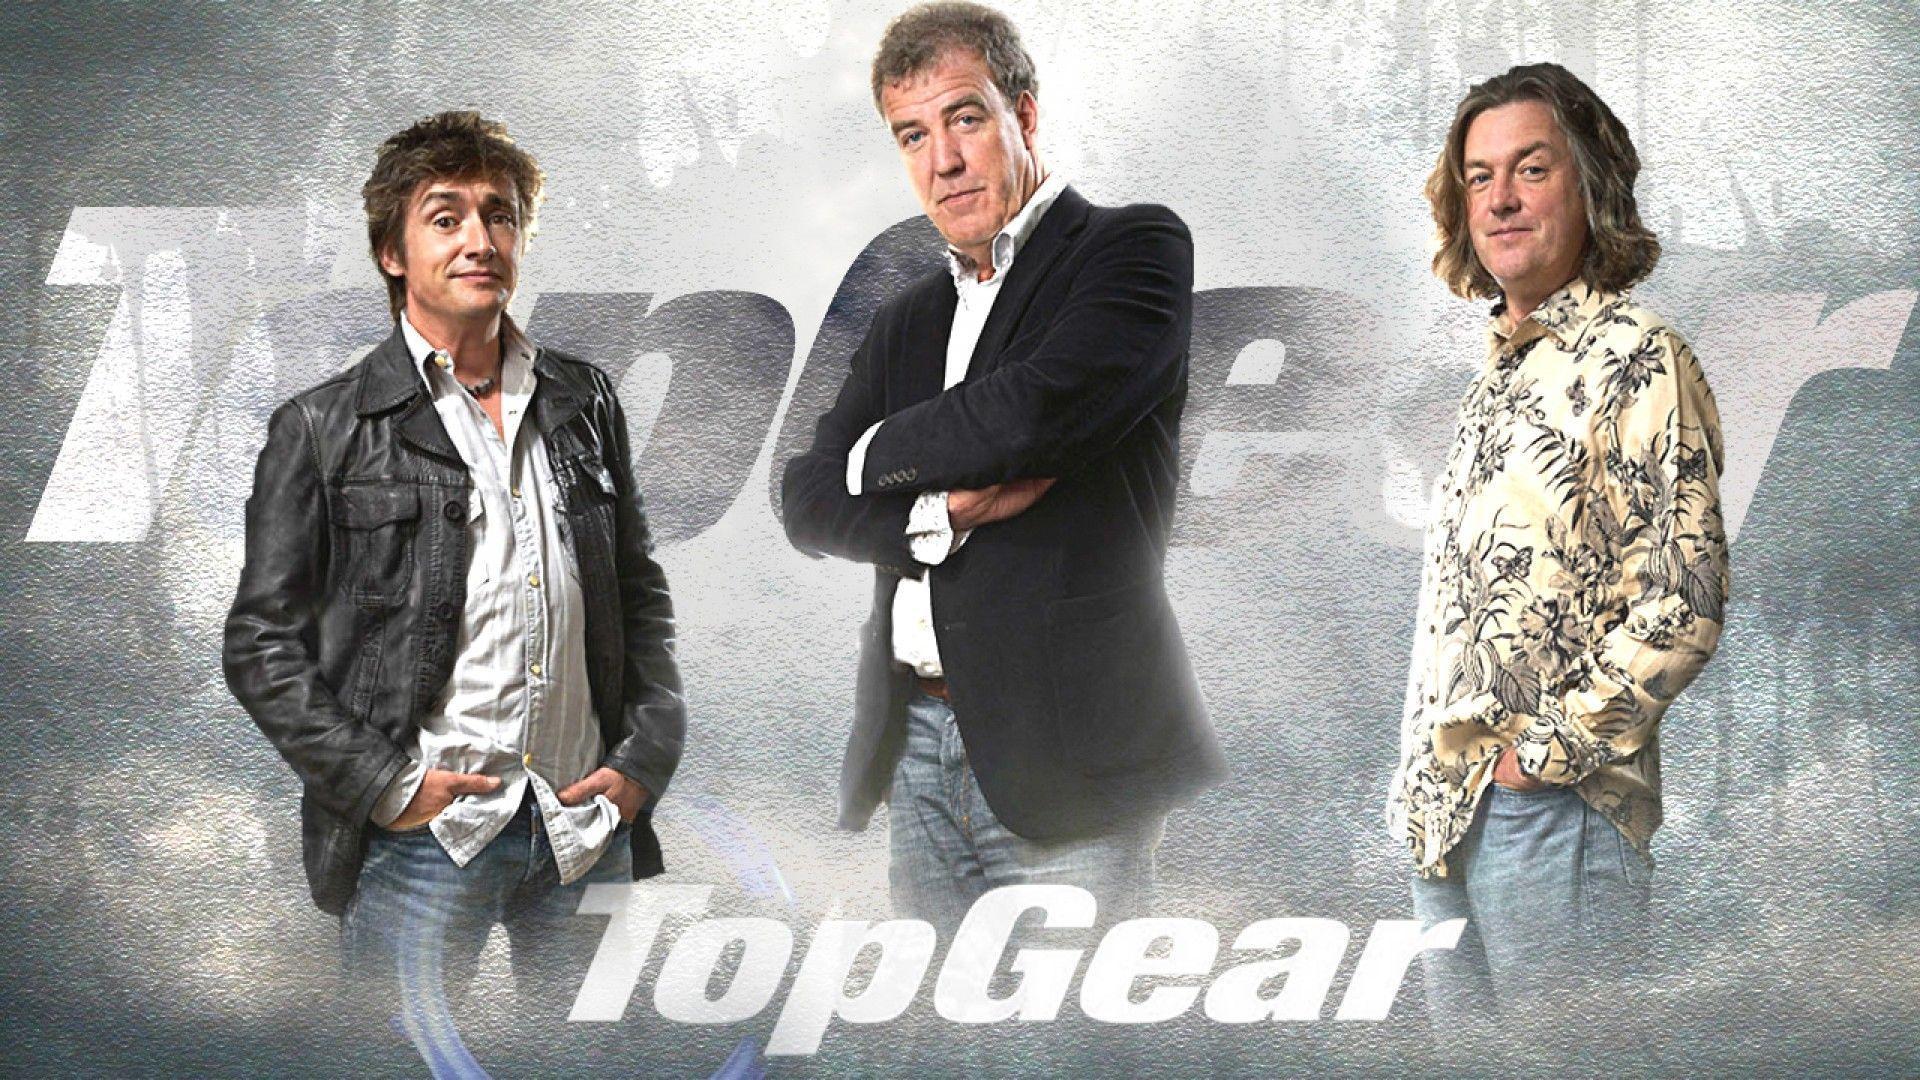 The best Top Gear wallpaper ever??. Top Gear wallpaper